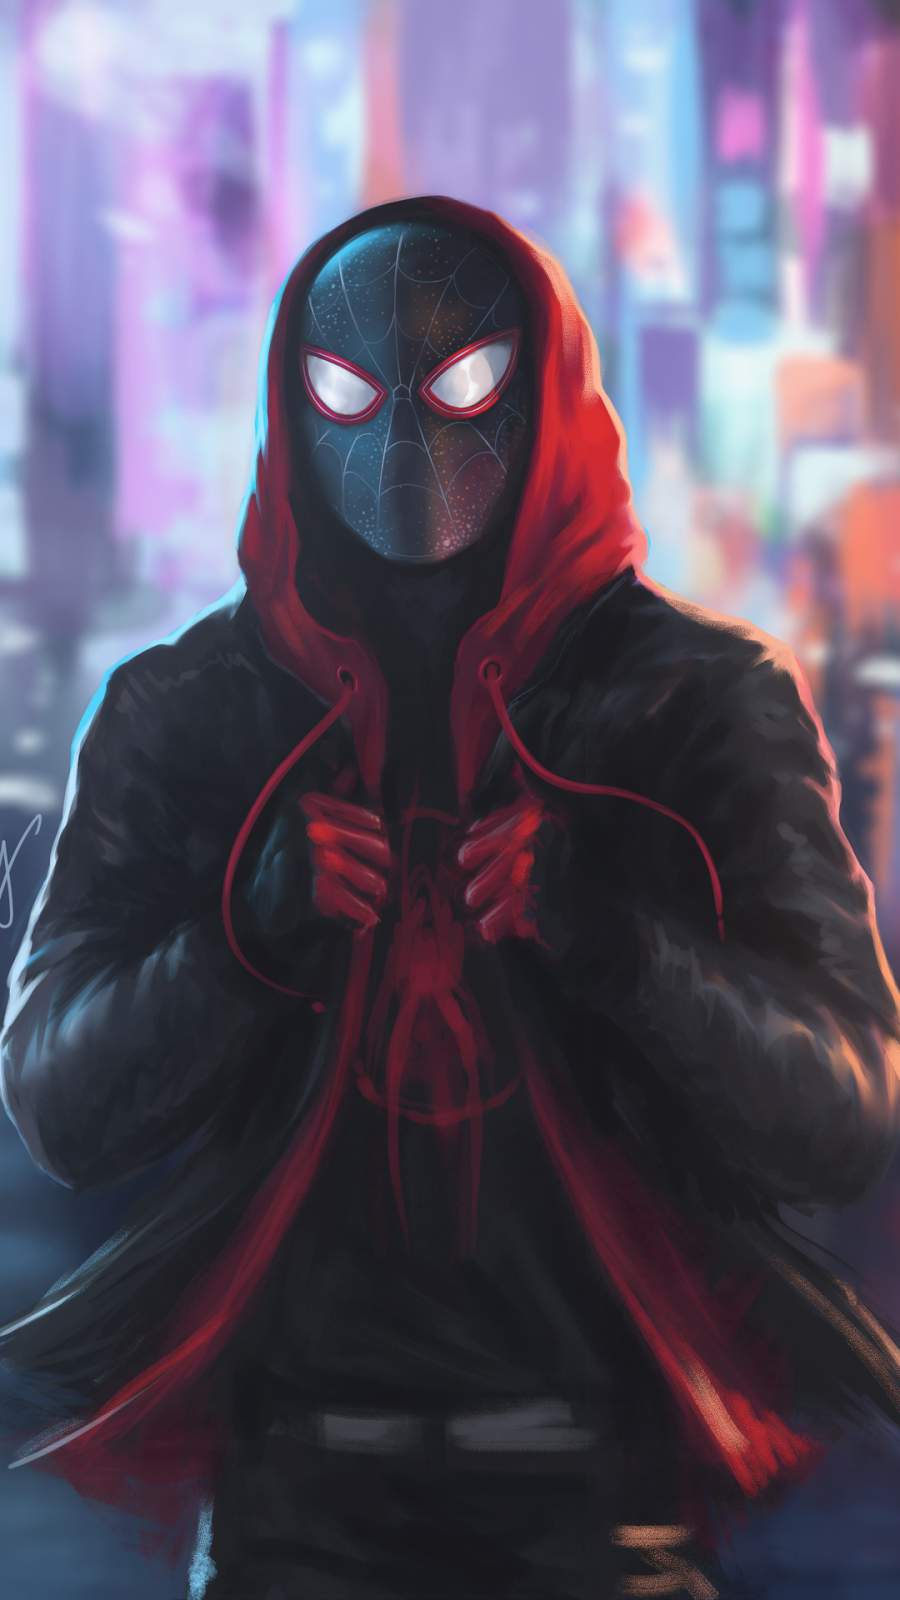 Miles Morales Spiderman In Hoodie iPhone Wallpaper